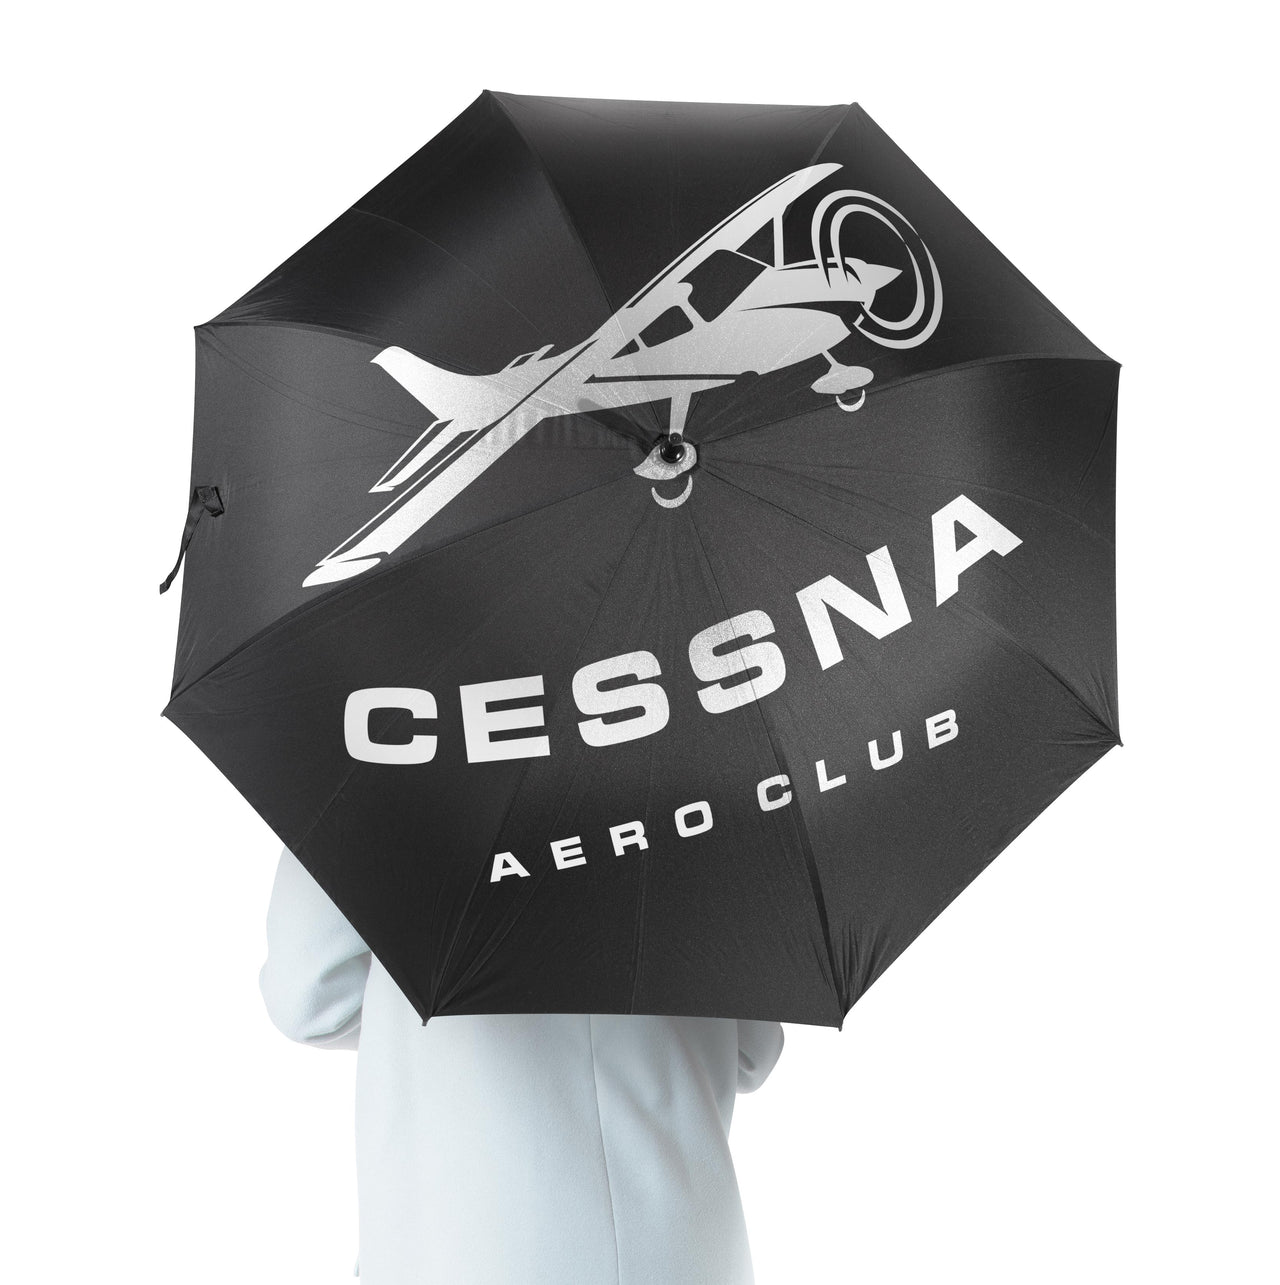 Cessna Aeroclub Designed Umbrella